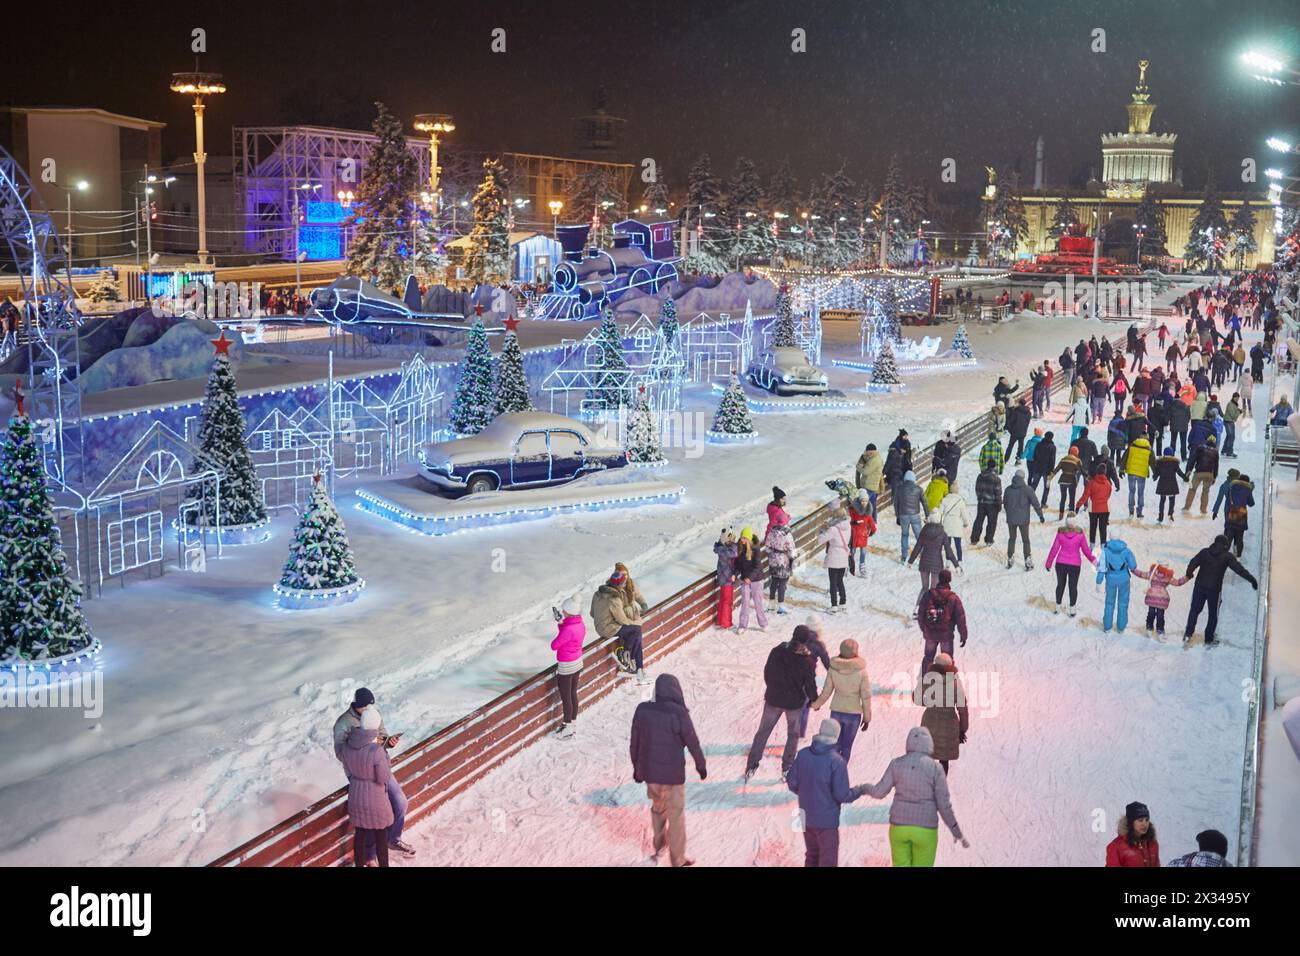 MOSKAU, RUSSLAND - 24. JAN 2015: Menschen auf Eislaufbahn am Abend in der VDNKh. Die Eislaufbahn am VDNKh ist die größte Eislaufbahn in Europa - mehr als Stockfoto